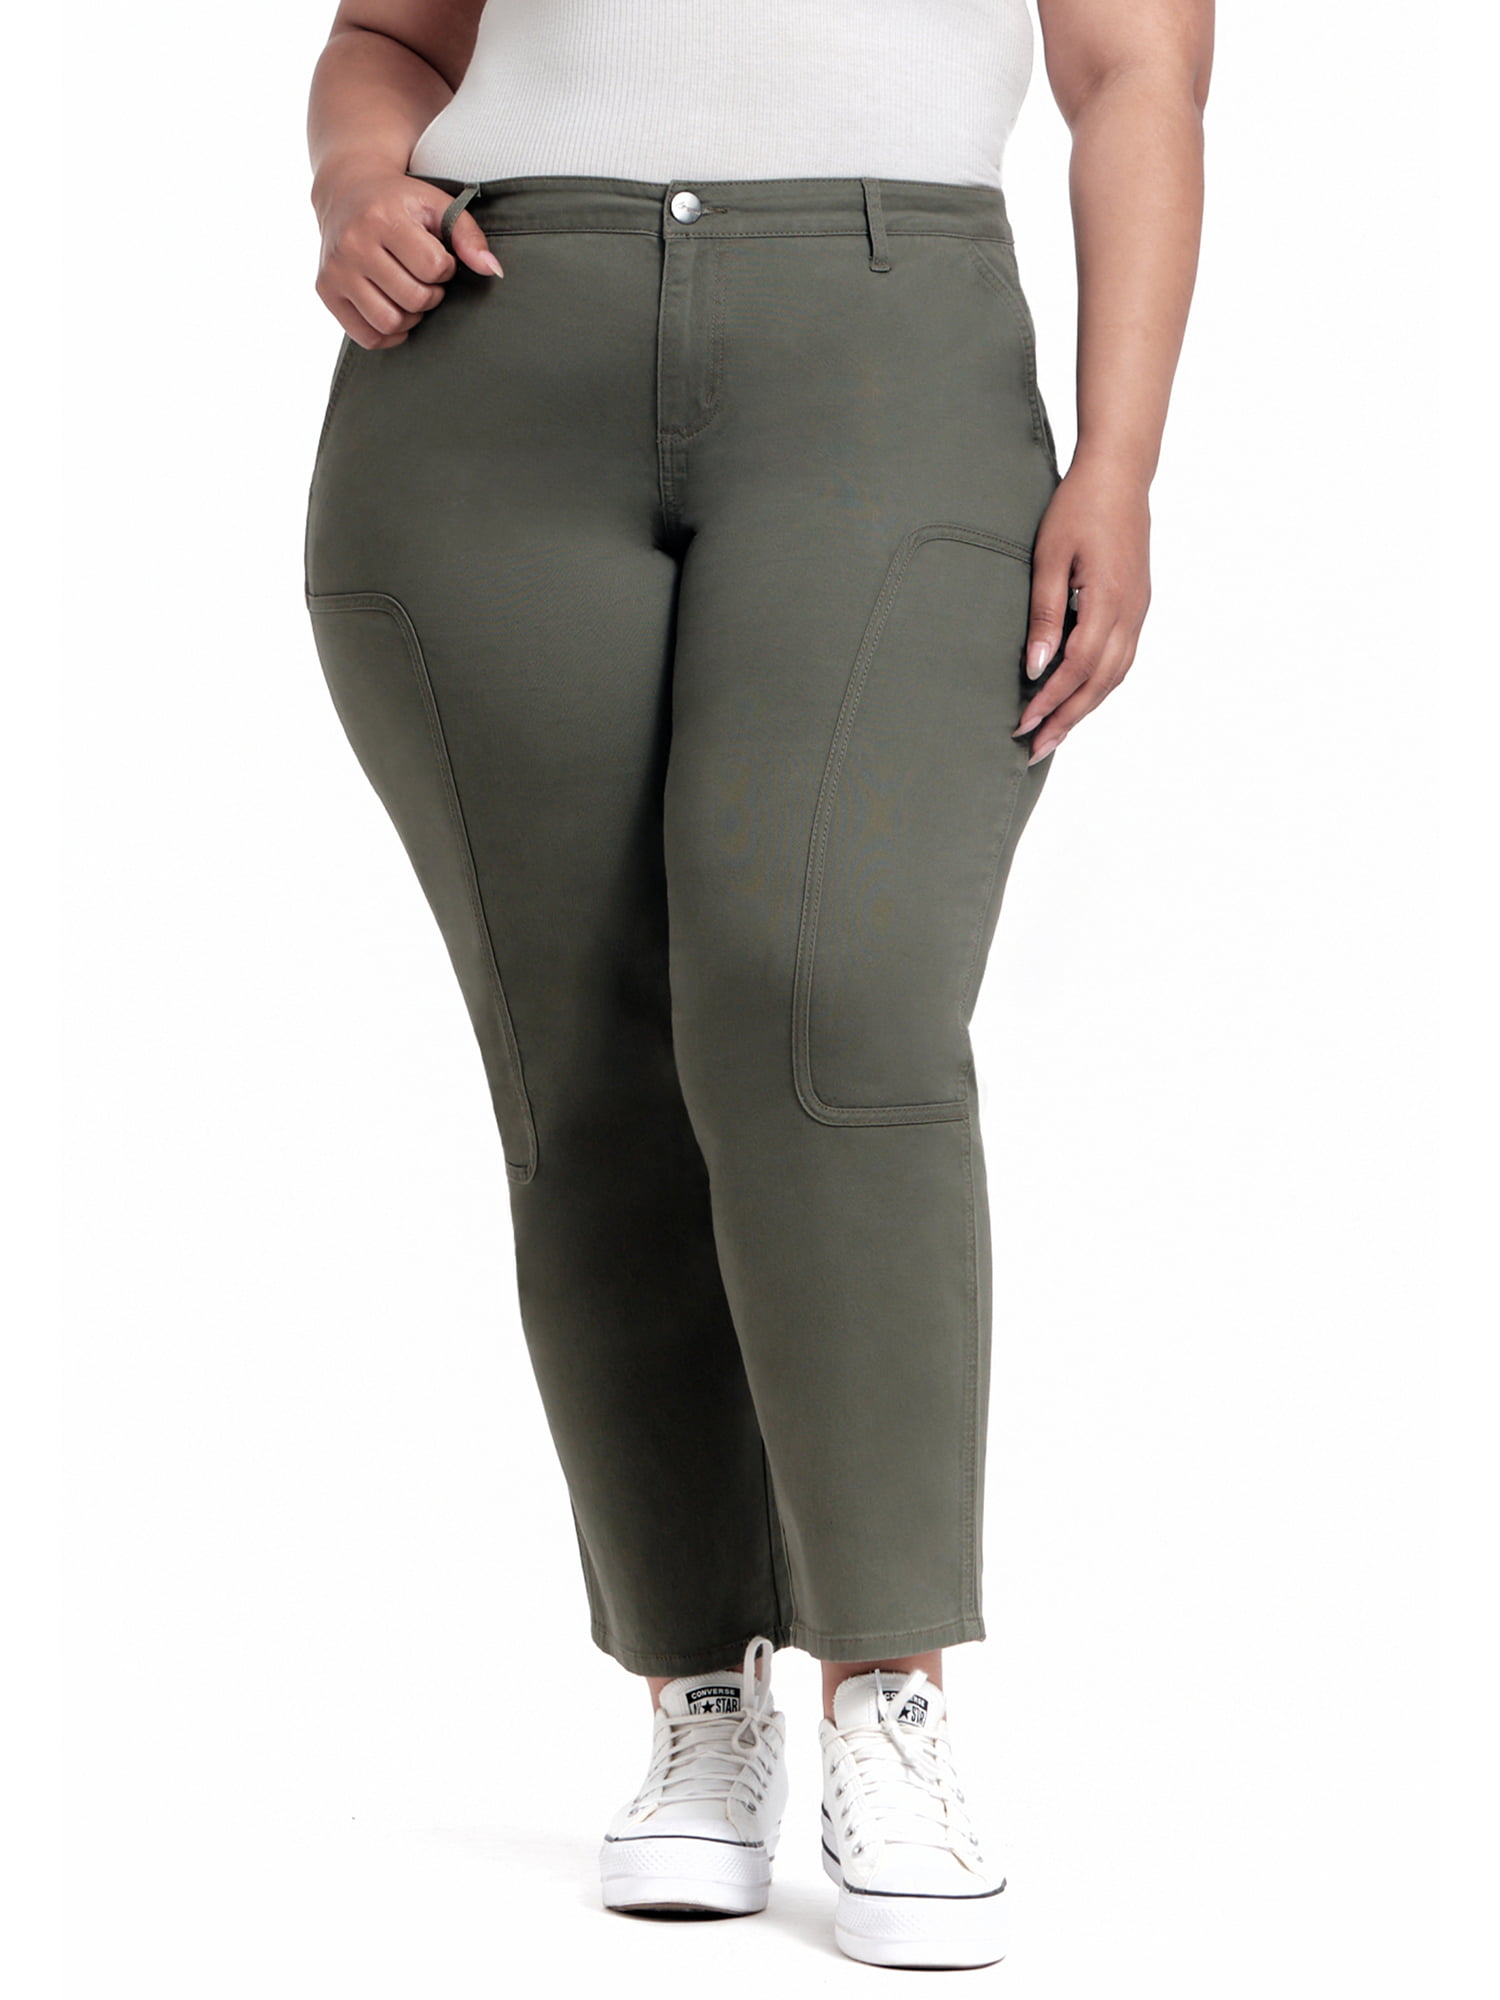 A3 Denim Women's Plus Size Carpenter Pants - Walmart.com